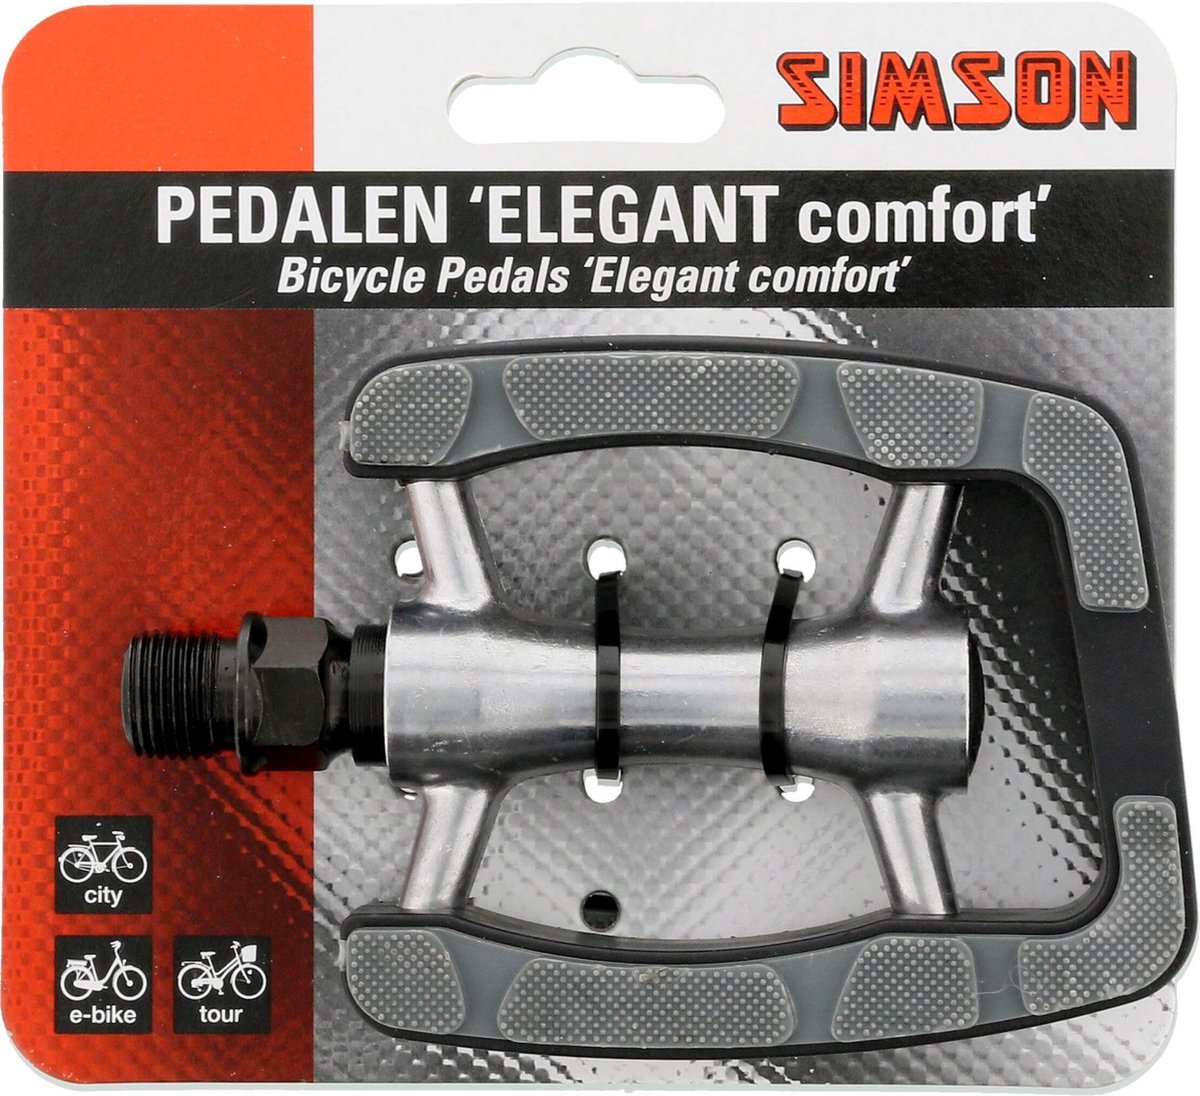 fiets pedaal - Simson Pedalen 'Elegant comfort'